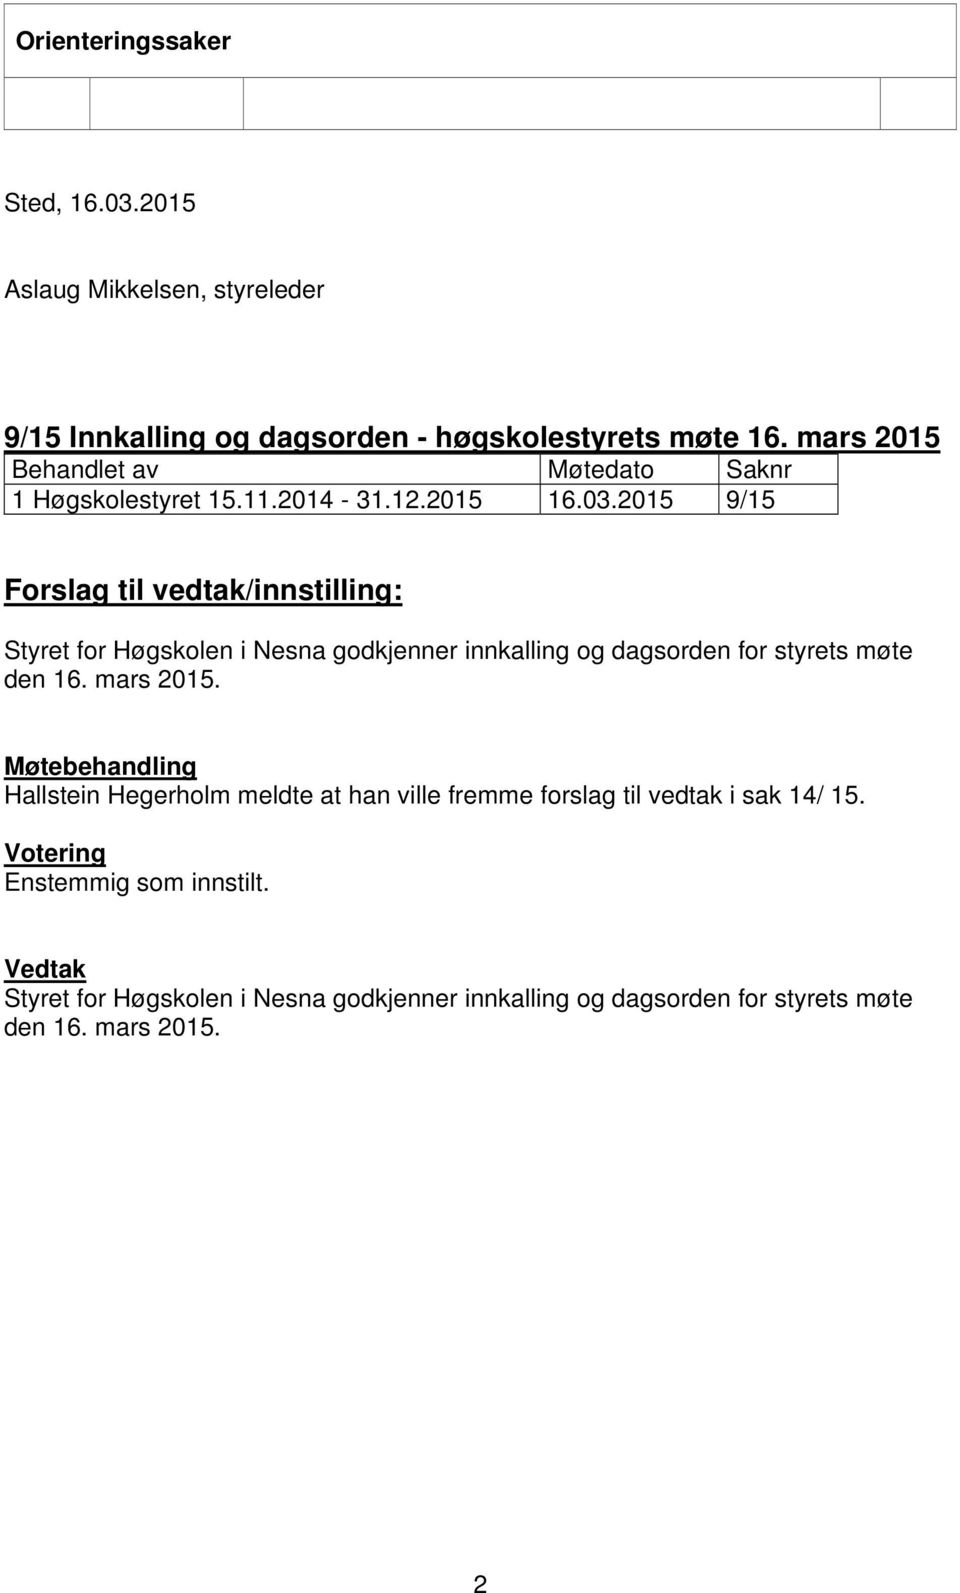 2015 9/15 Forslag til vedtak/innstilling: Styret for Høgskolen i Nesna godkjenner innkalling og dagsorden for styrets møte den 16. mars 2015.